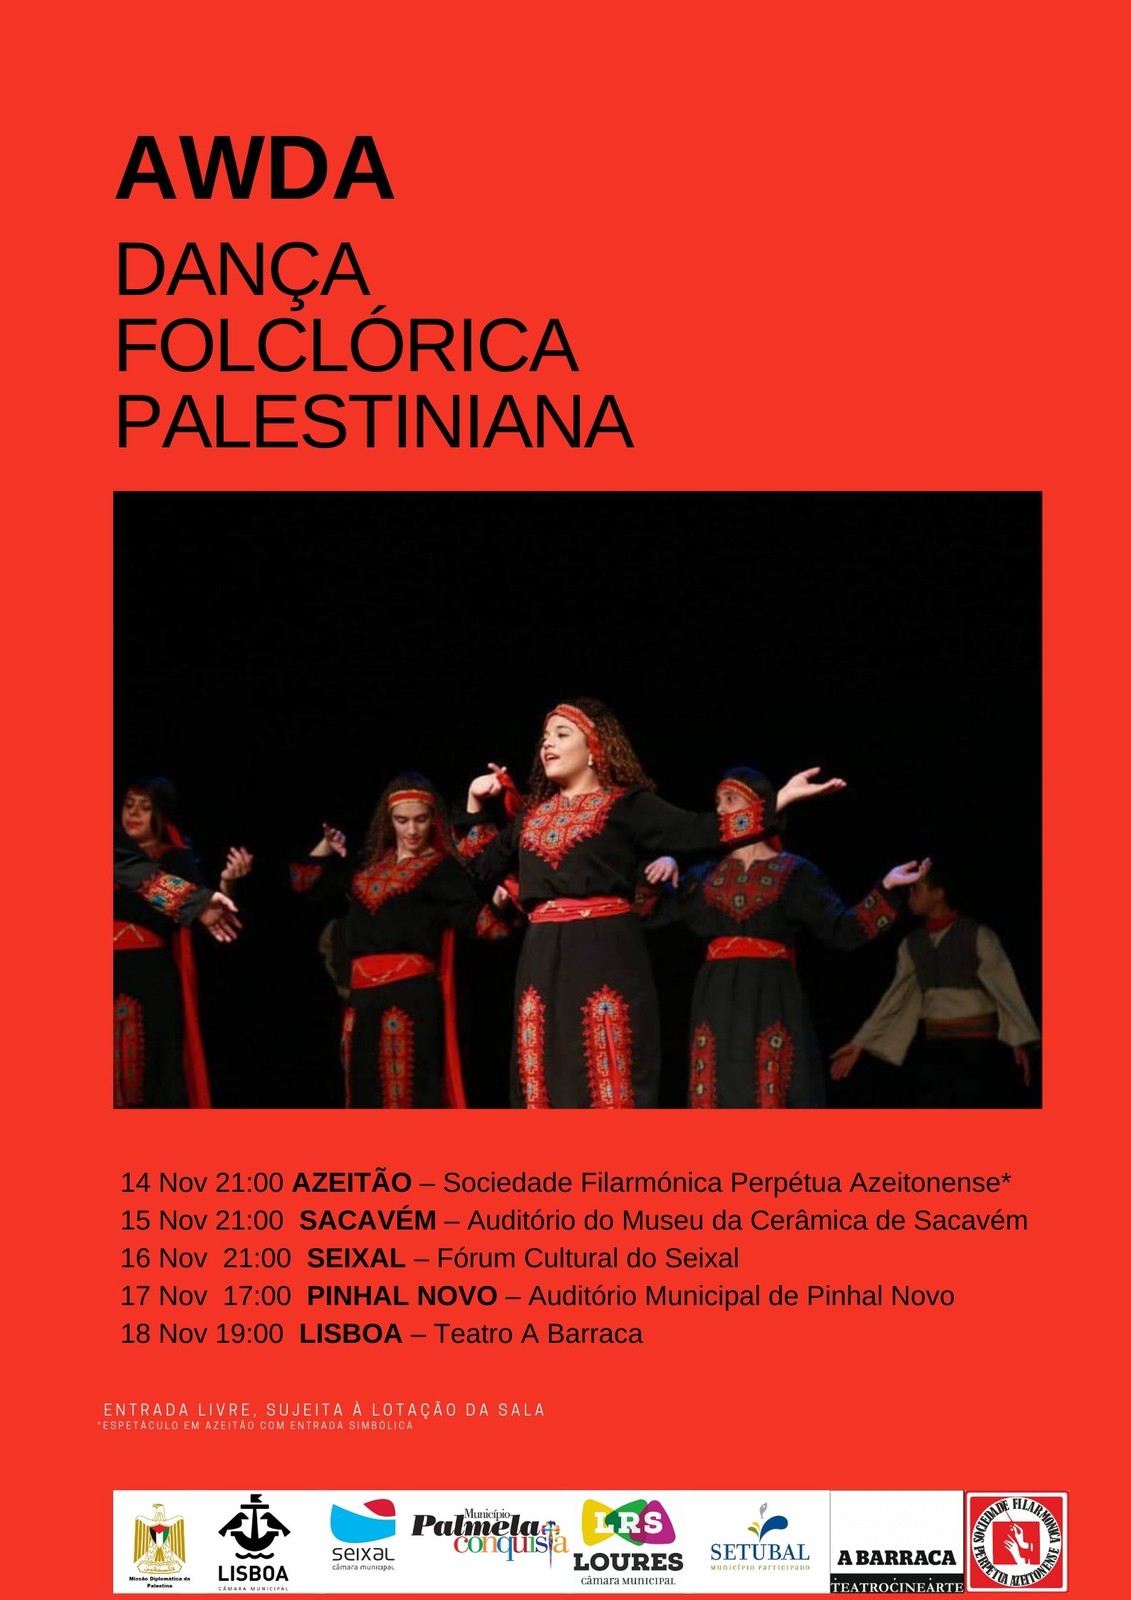 Dança Folclórica Palestiniana: Grupo Awda atua no Auditório Municipal de Pinhal Novo